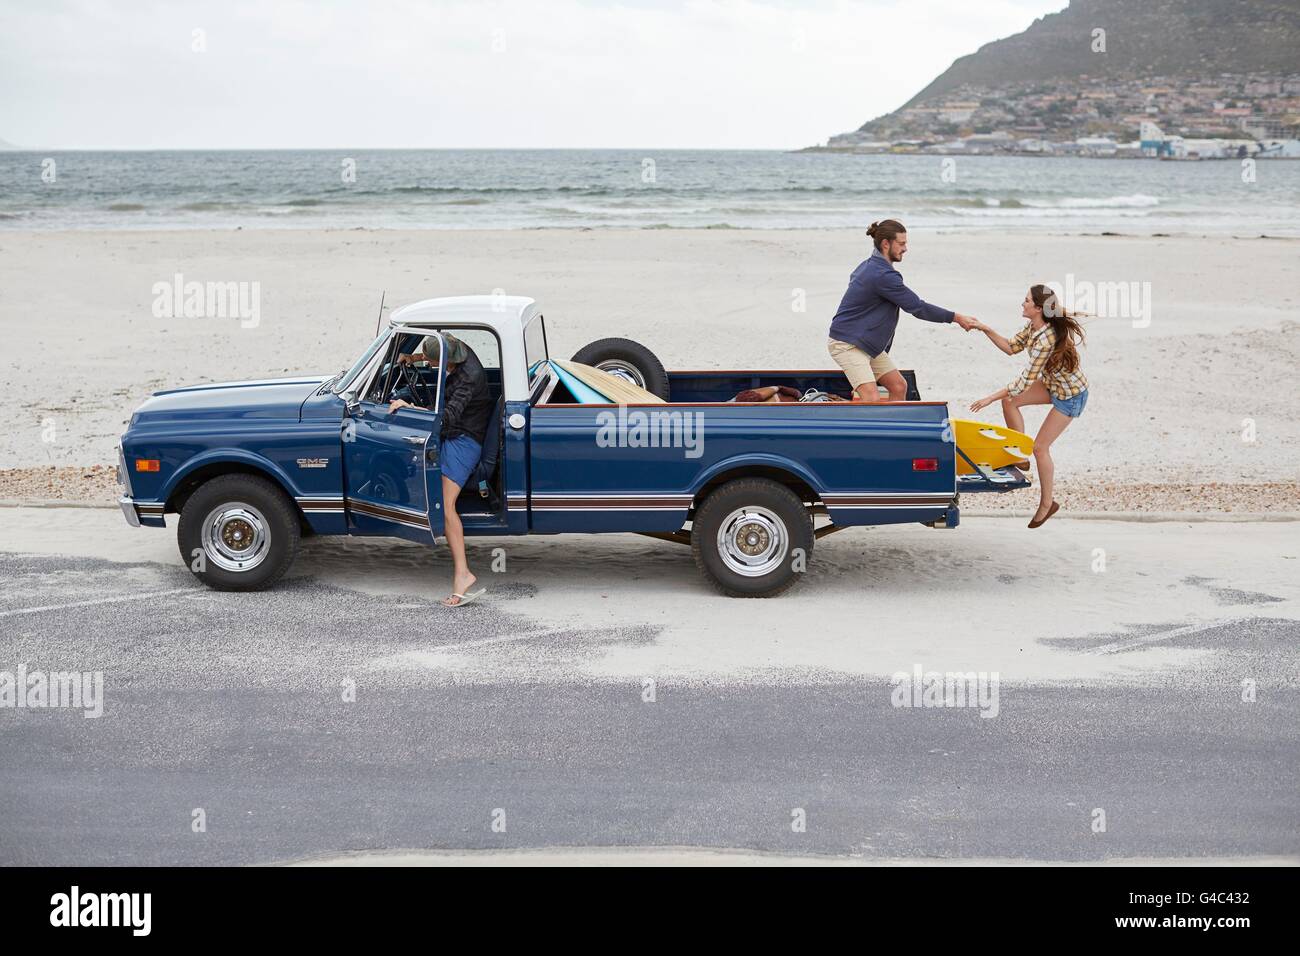 Modello rilasciato. Giovane donna di essere aiutato nel pick up truck sulla spiaggia. Foto Stock